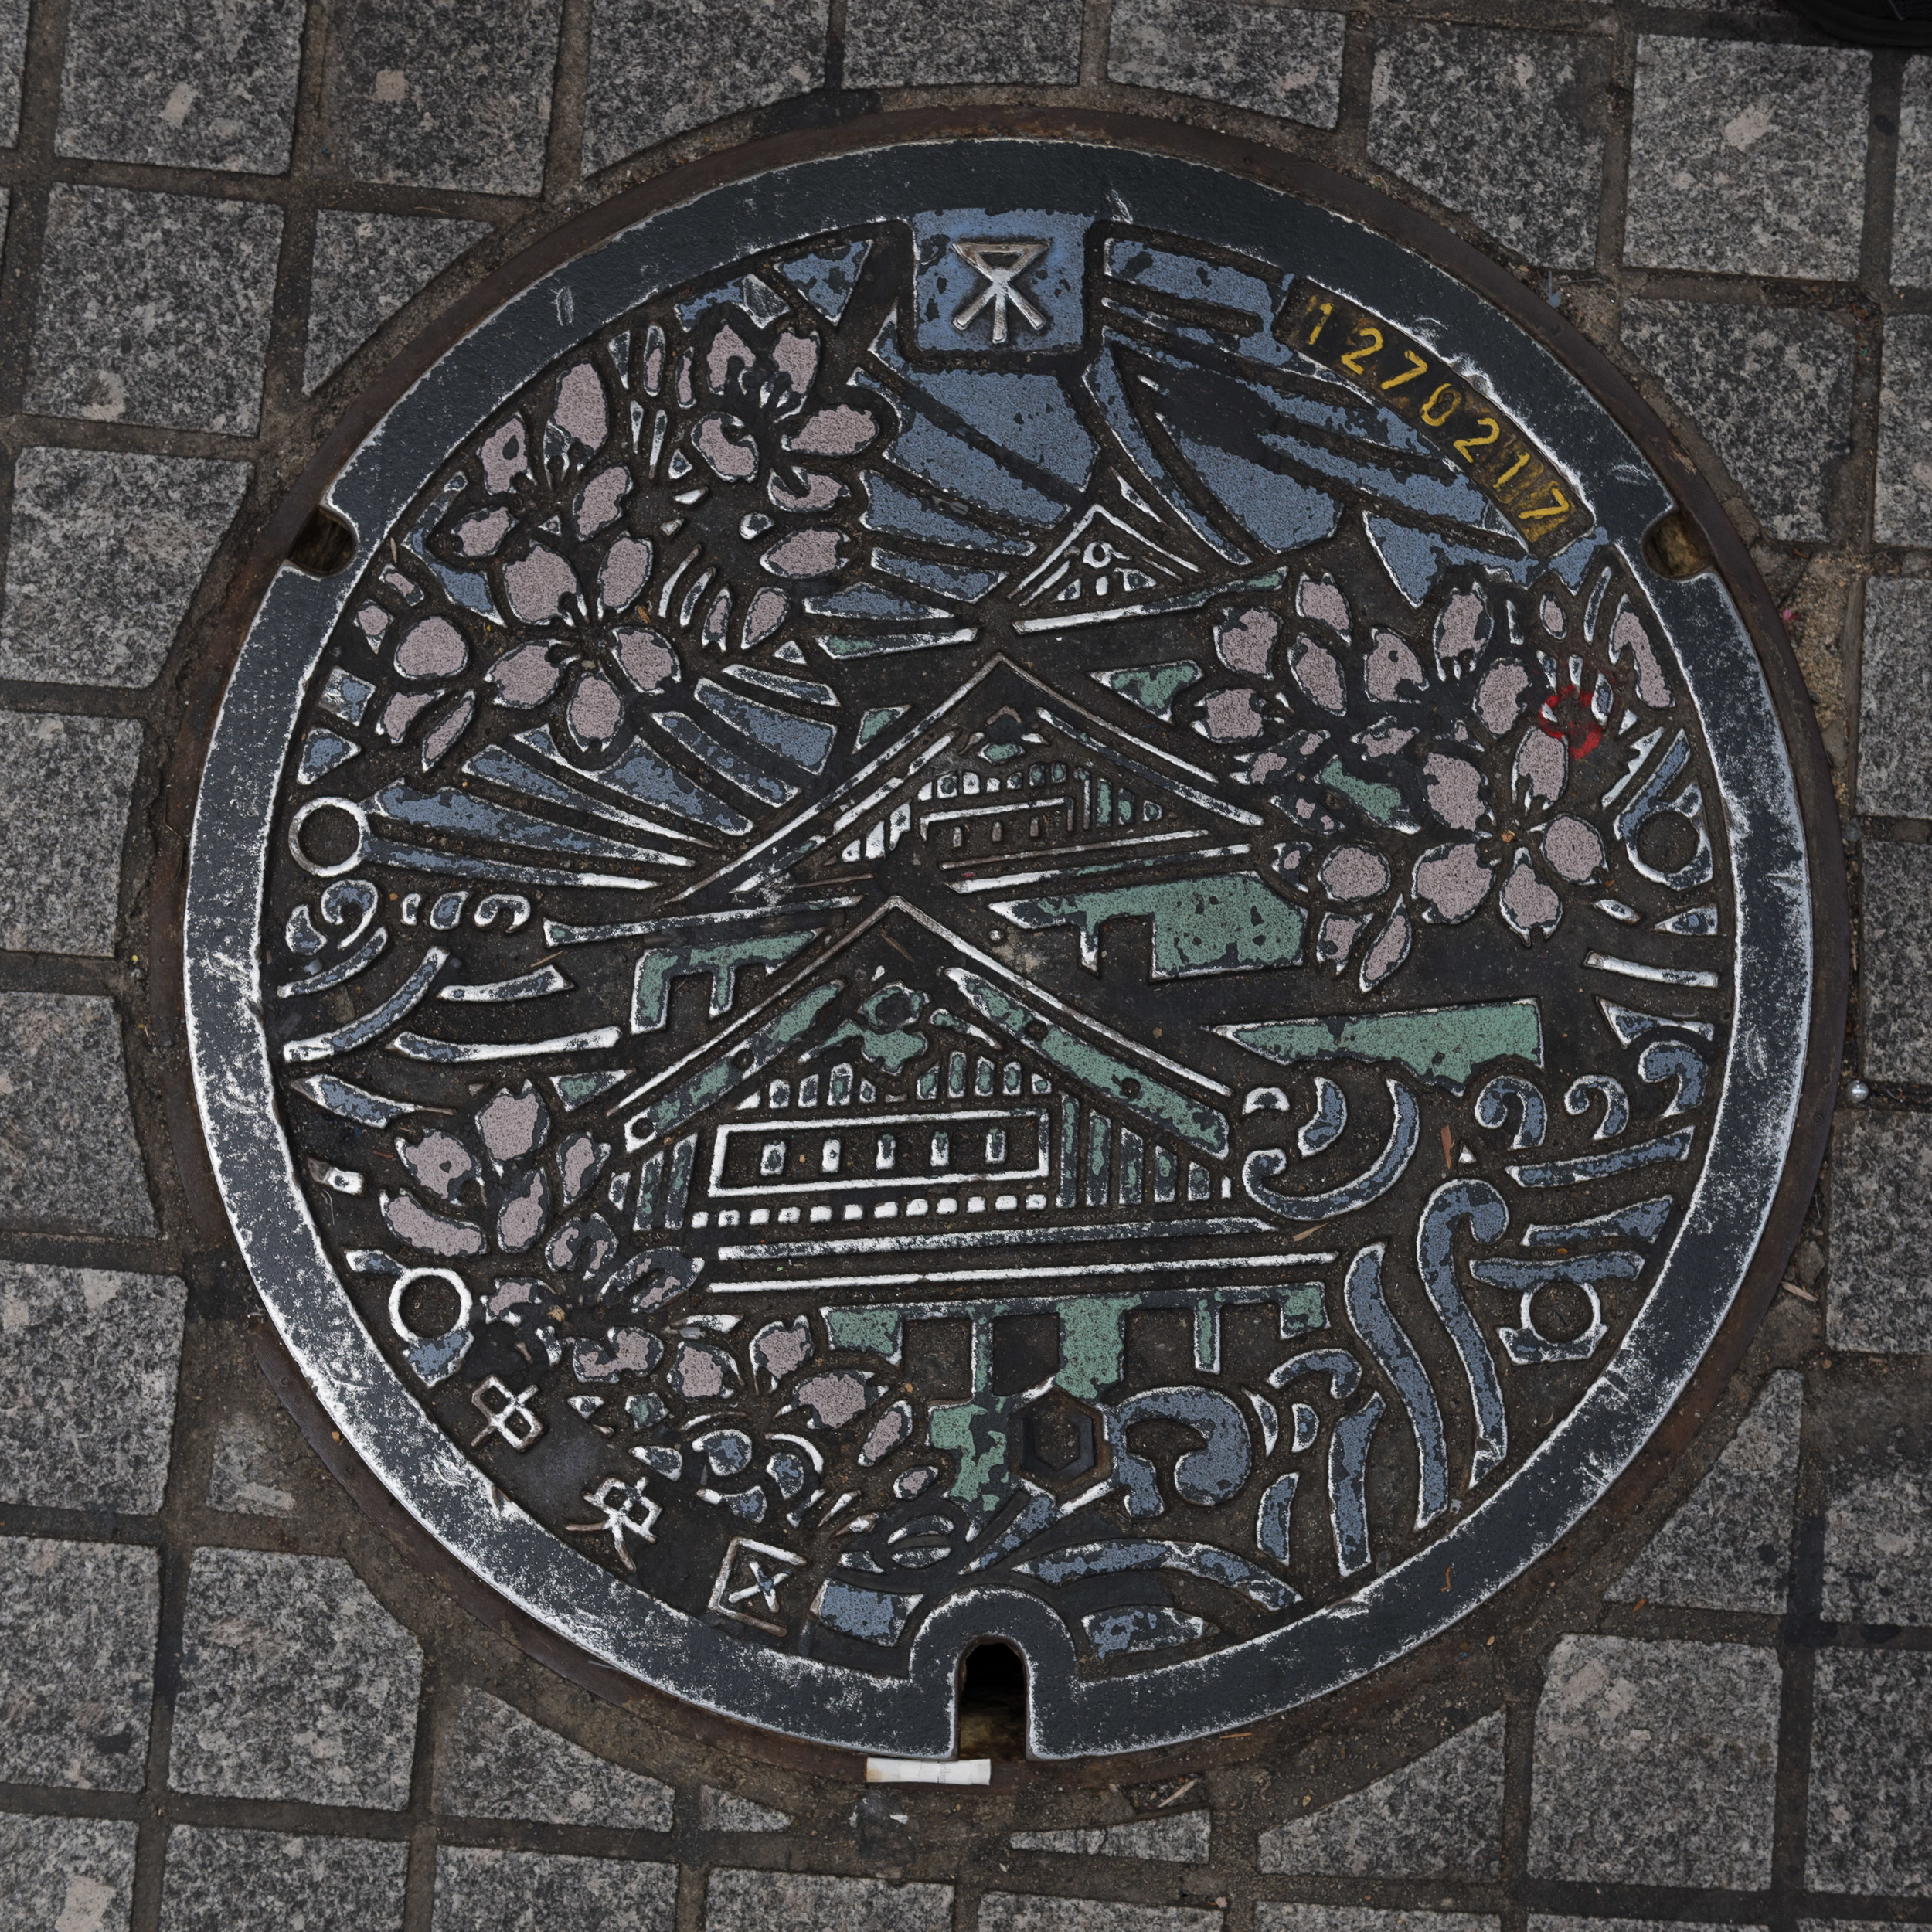 Japan_Manhole-14.jpg